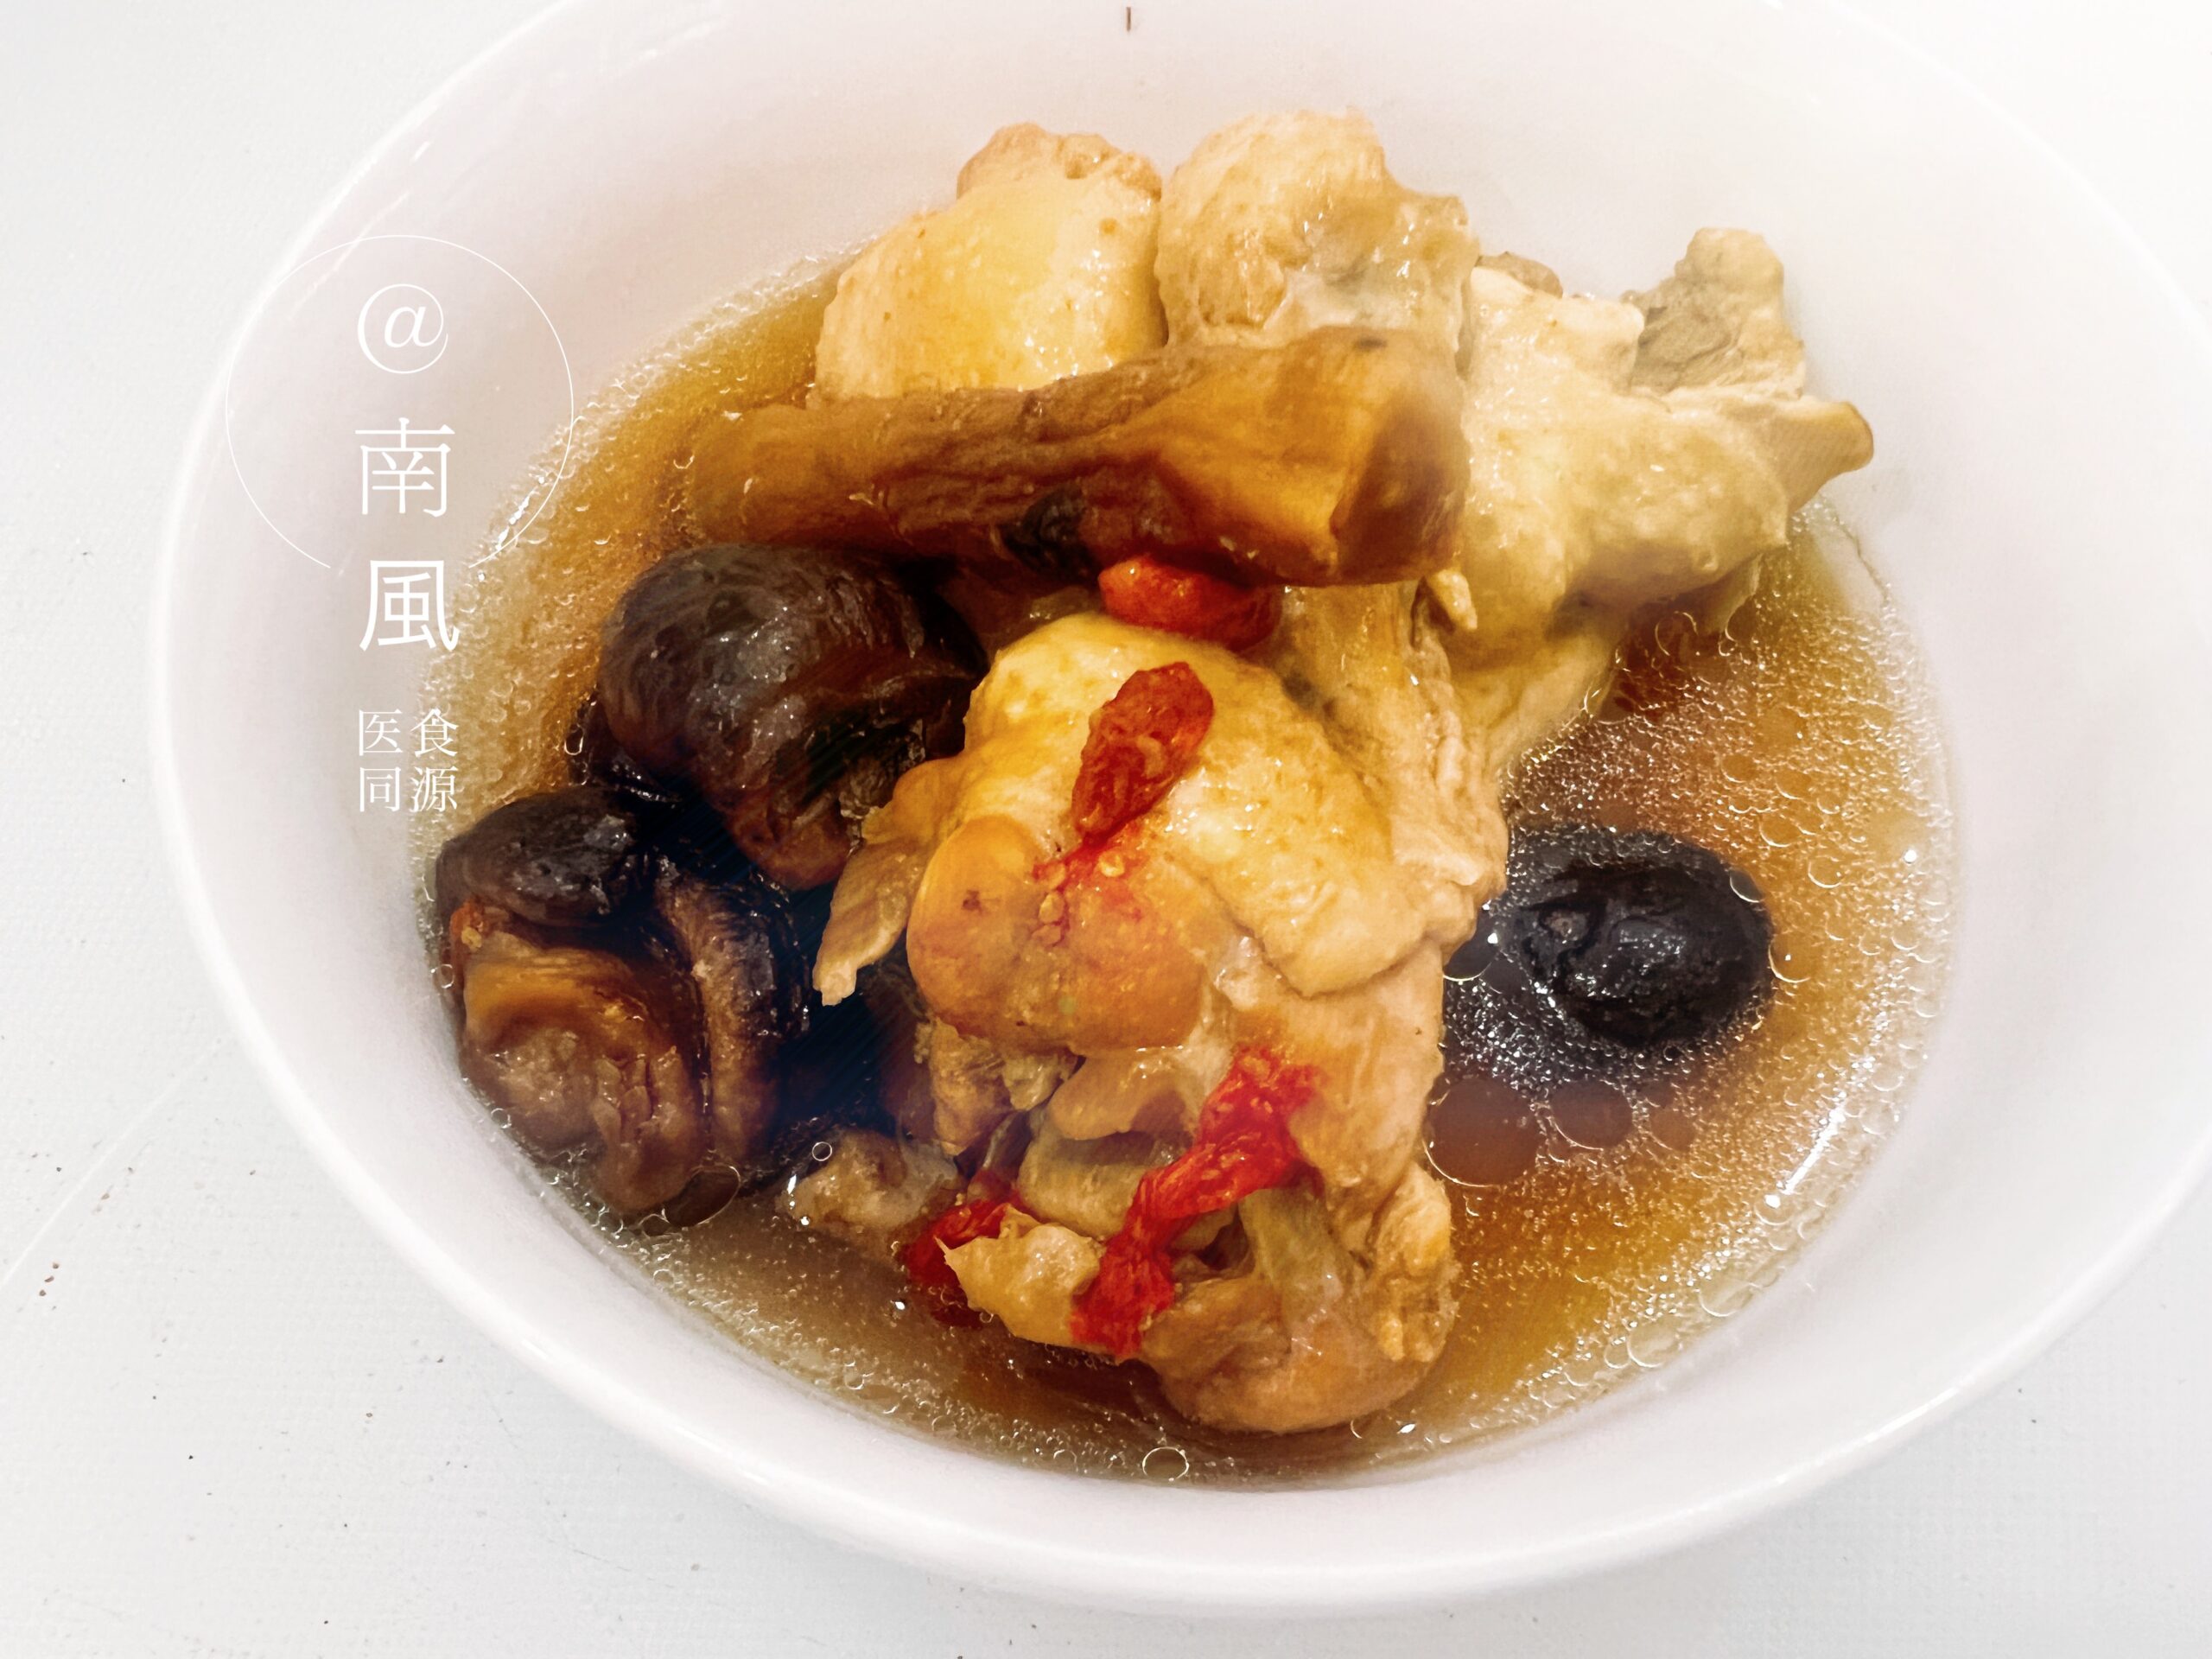 Mushroom & Chinese Herbal Chicken Soup・干し椎茸の漢方薬膳チキンスープ